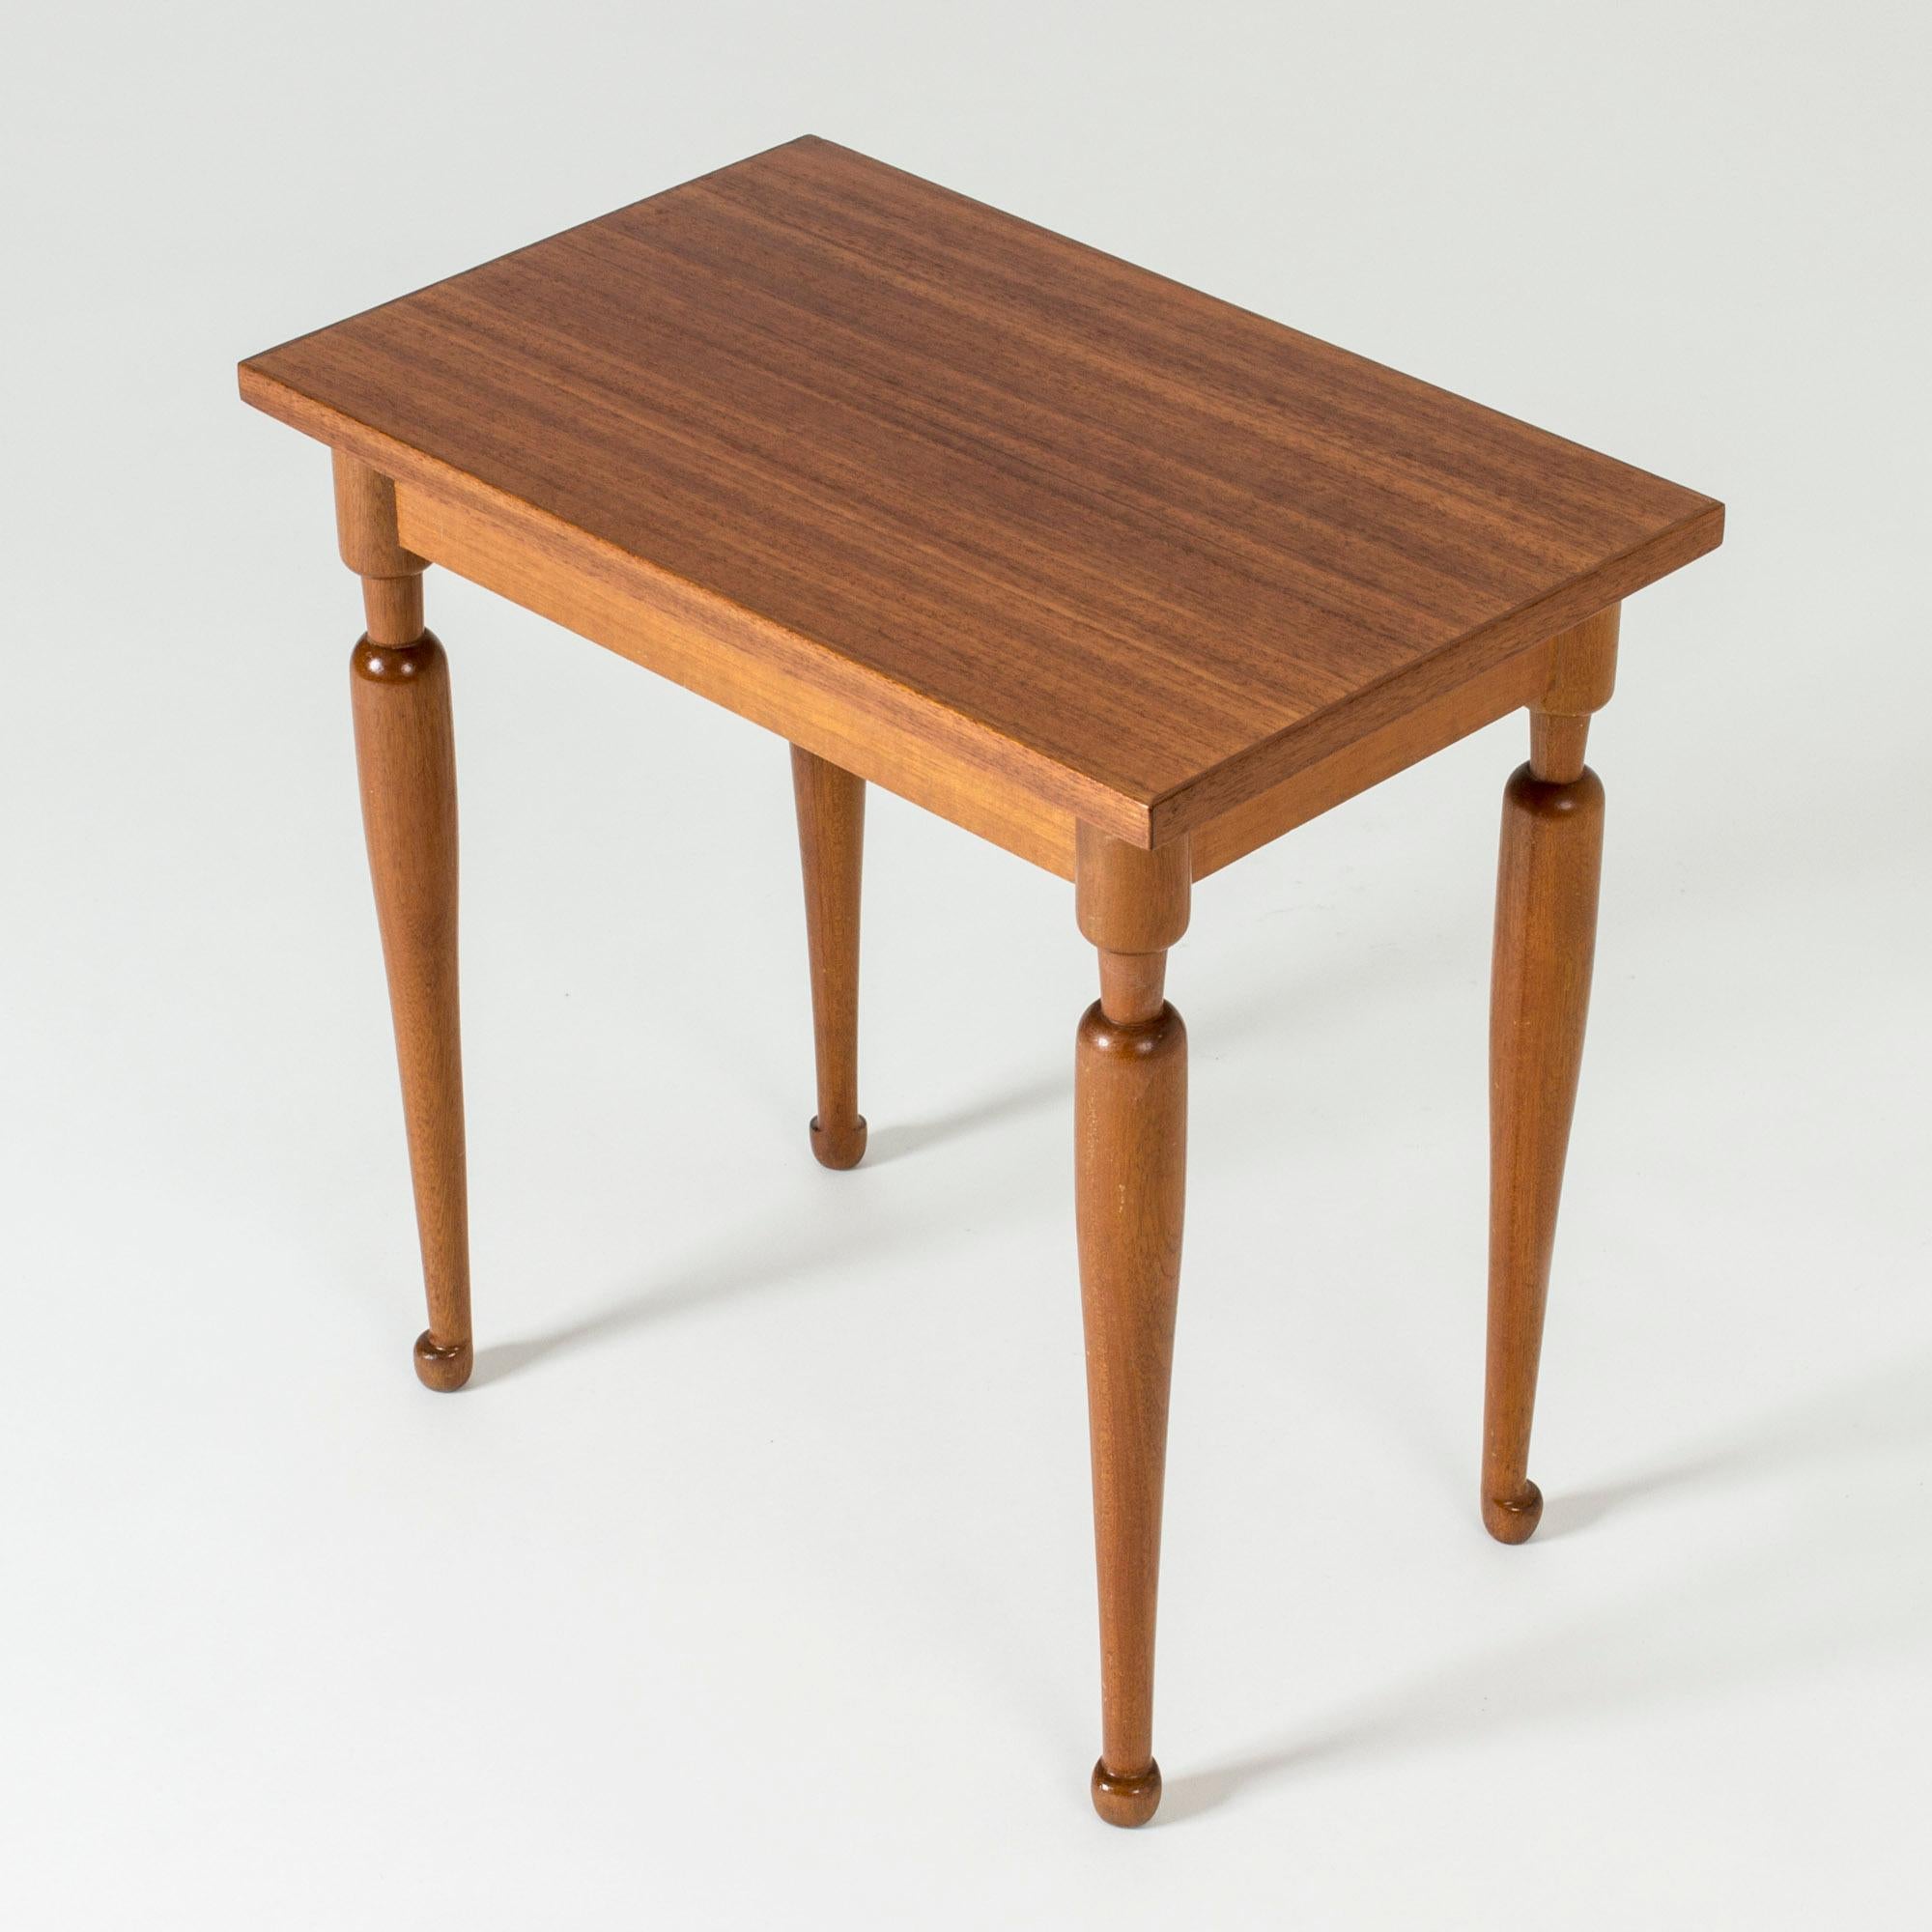 Scandinavian Modern Mahogany Side Table by Josef Frank for Svenskt Tenn, Sweden, 1950s